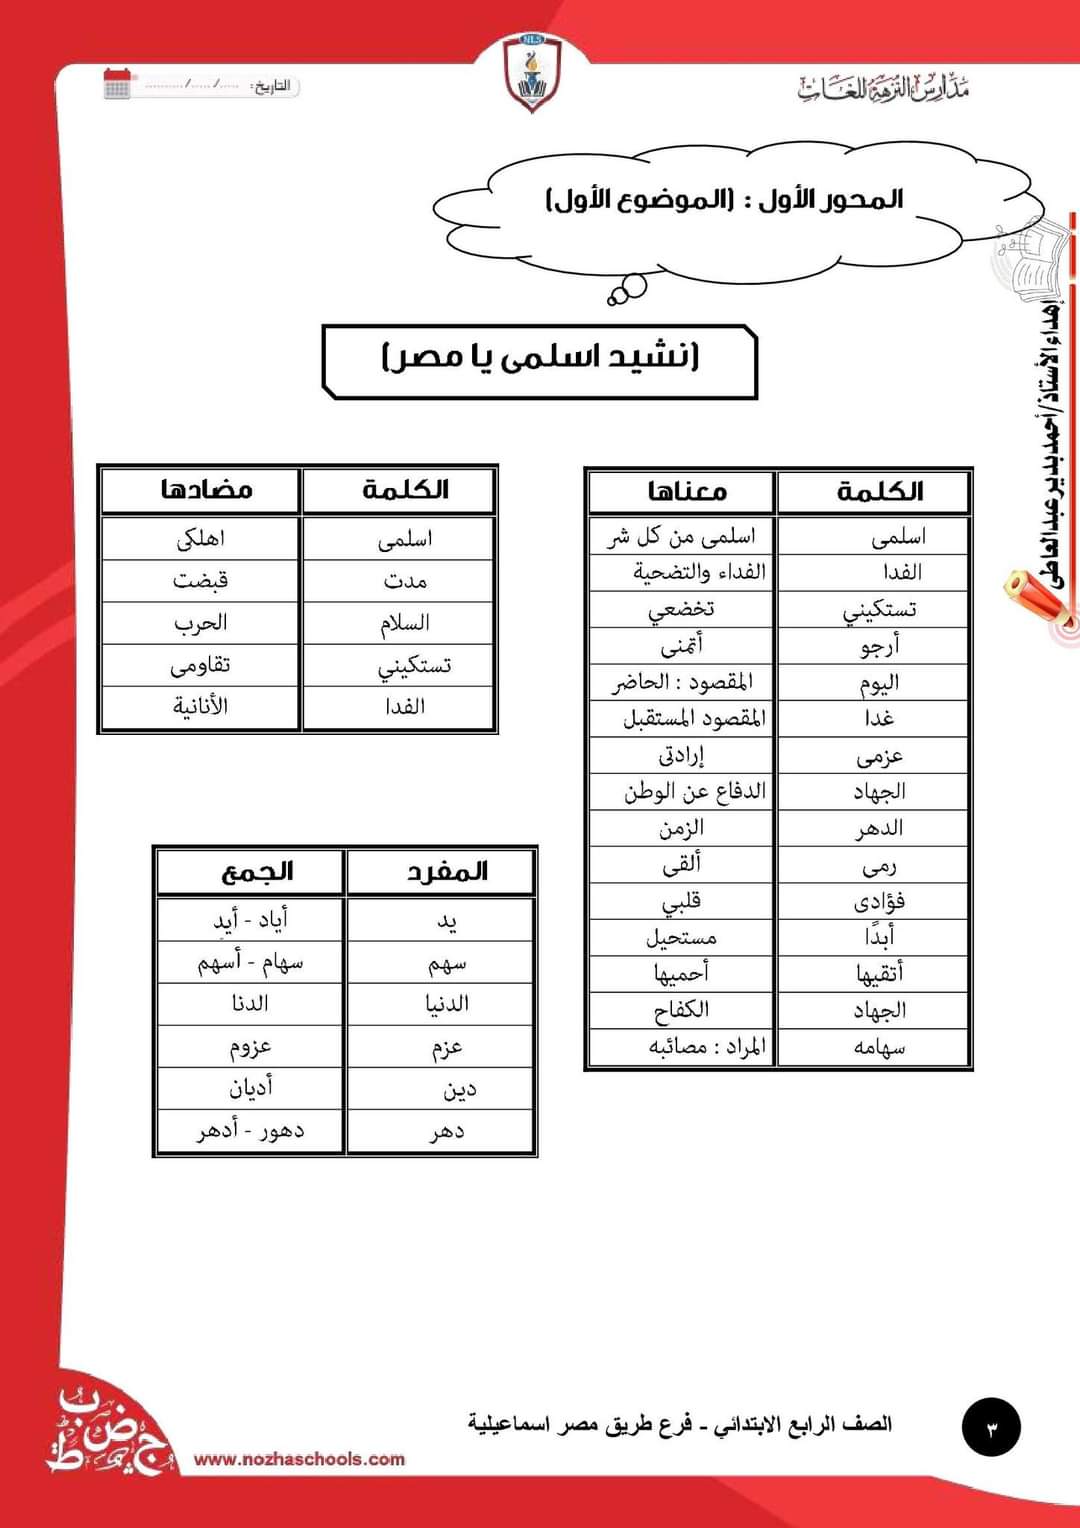 تحميل بوكليت عربي الصف الرابع الابتدائي الترم الاول 2023 - تحميل بوكليت مدارس النزهة